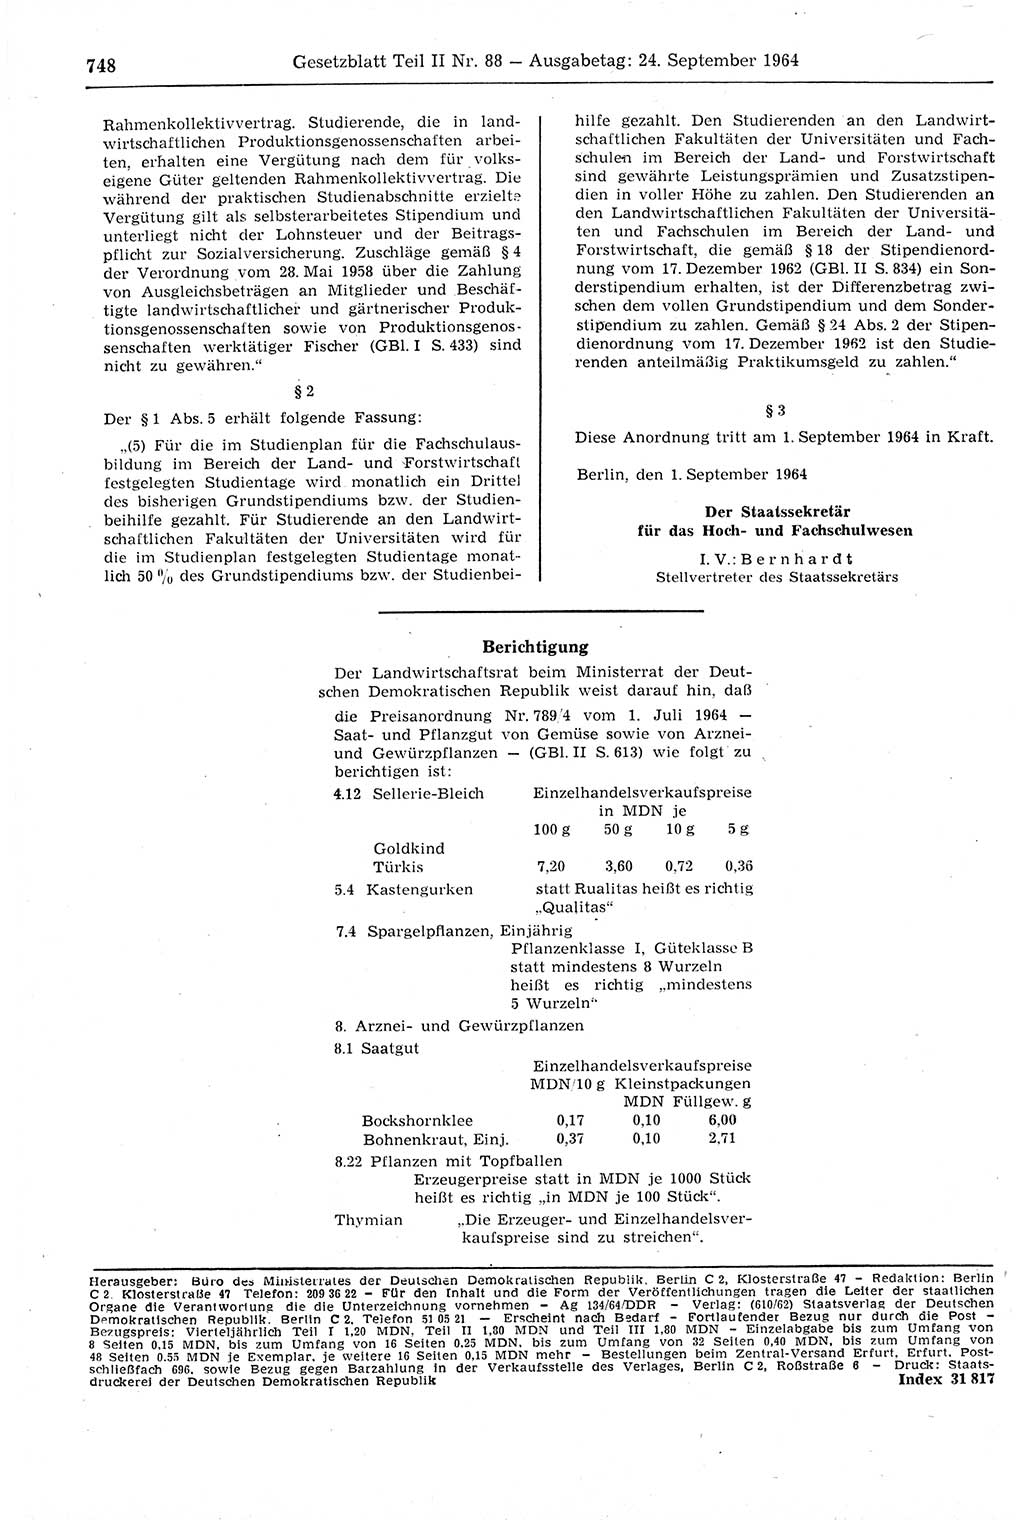 Gesetzblatt (GBl.) der Deutschen Demokratischen Republik (DDR) Teil ⅠⅠ 1964, Seite 748 (GBl. DDR ⅠⅠ 1964, S. 748)